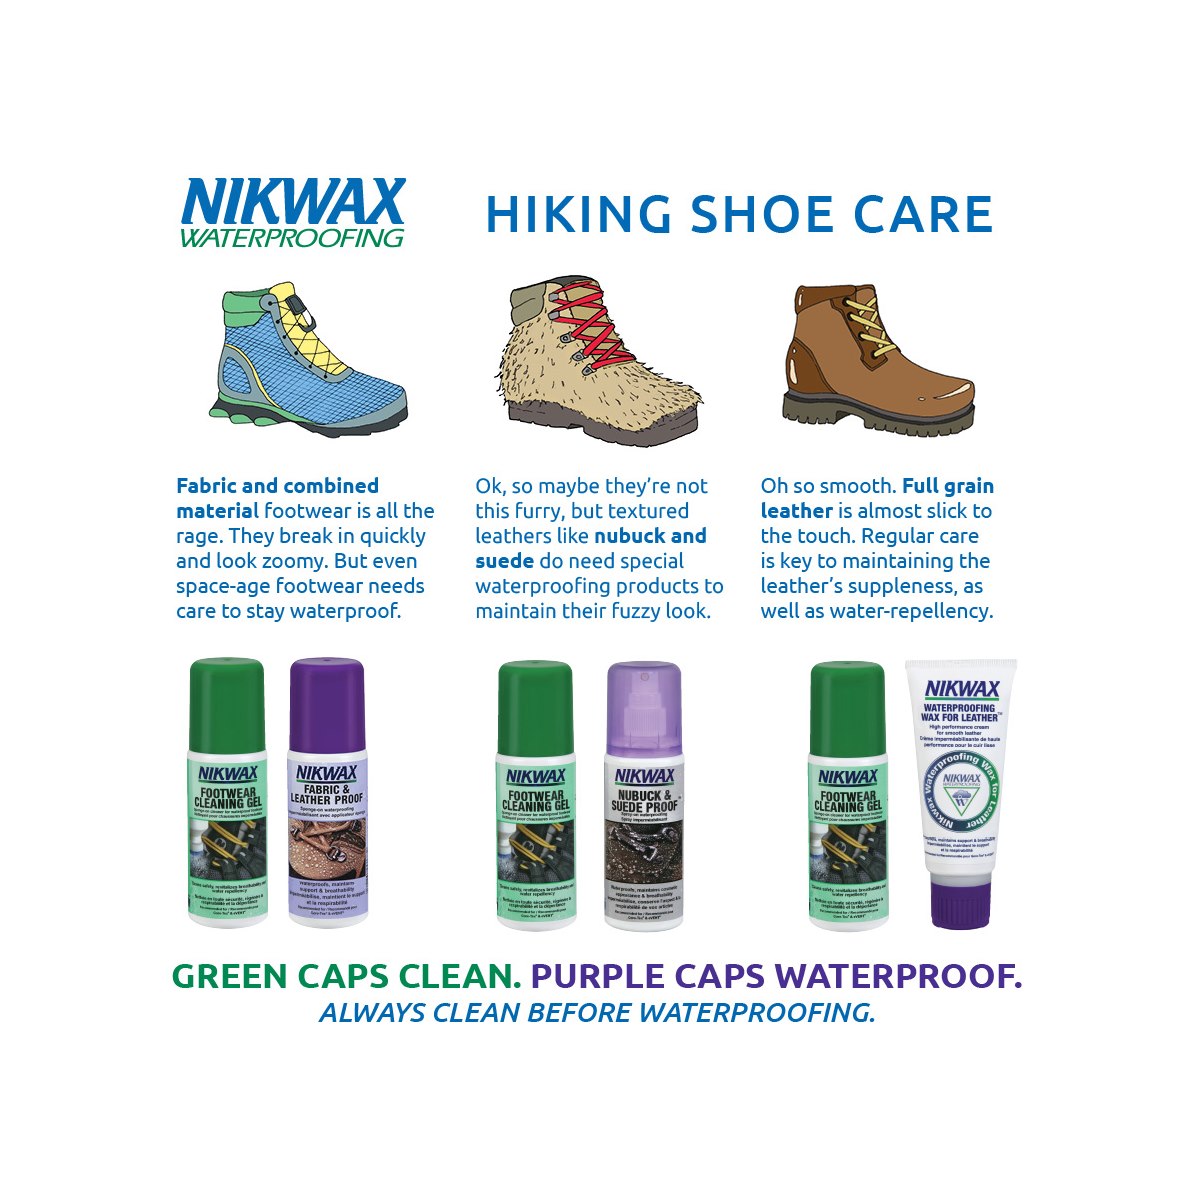 Nikwax Hiking Shoe Care Guide